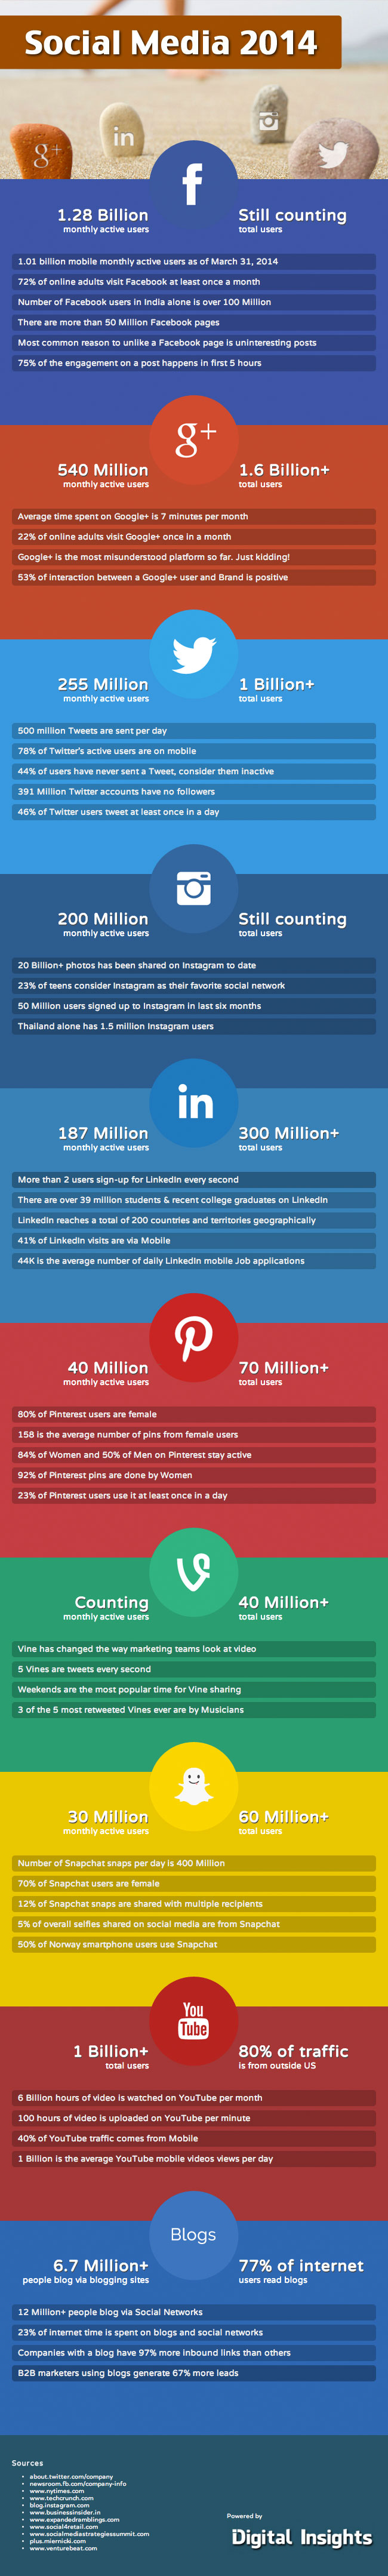 Social Media stats 2014 by digitalinsight.com 